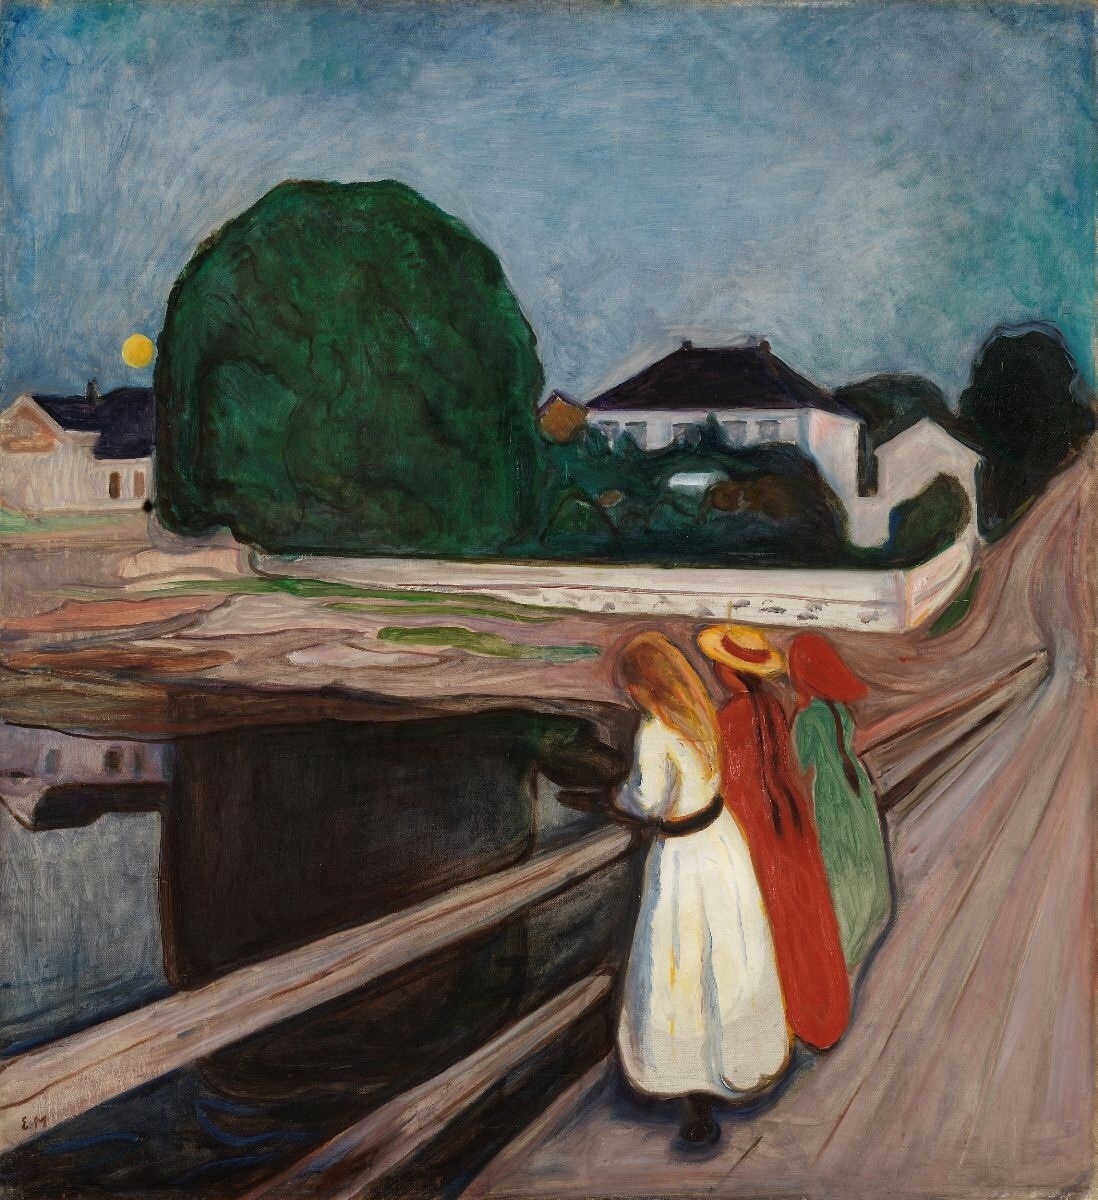 Pintado en 1902 con colores brillantes y representando una escena al aire libre -a diferencia de gran parte de su obra anterior-, muchos consideran que esta obra es una de las mejores de Munch, de ahí su elevado precio, que lo recomienda como uno de los cuadros más caros del mundo jamás vendidos a partir de 2024.